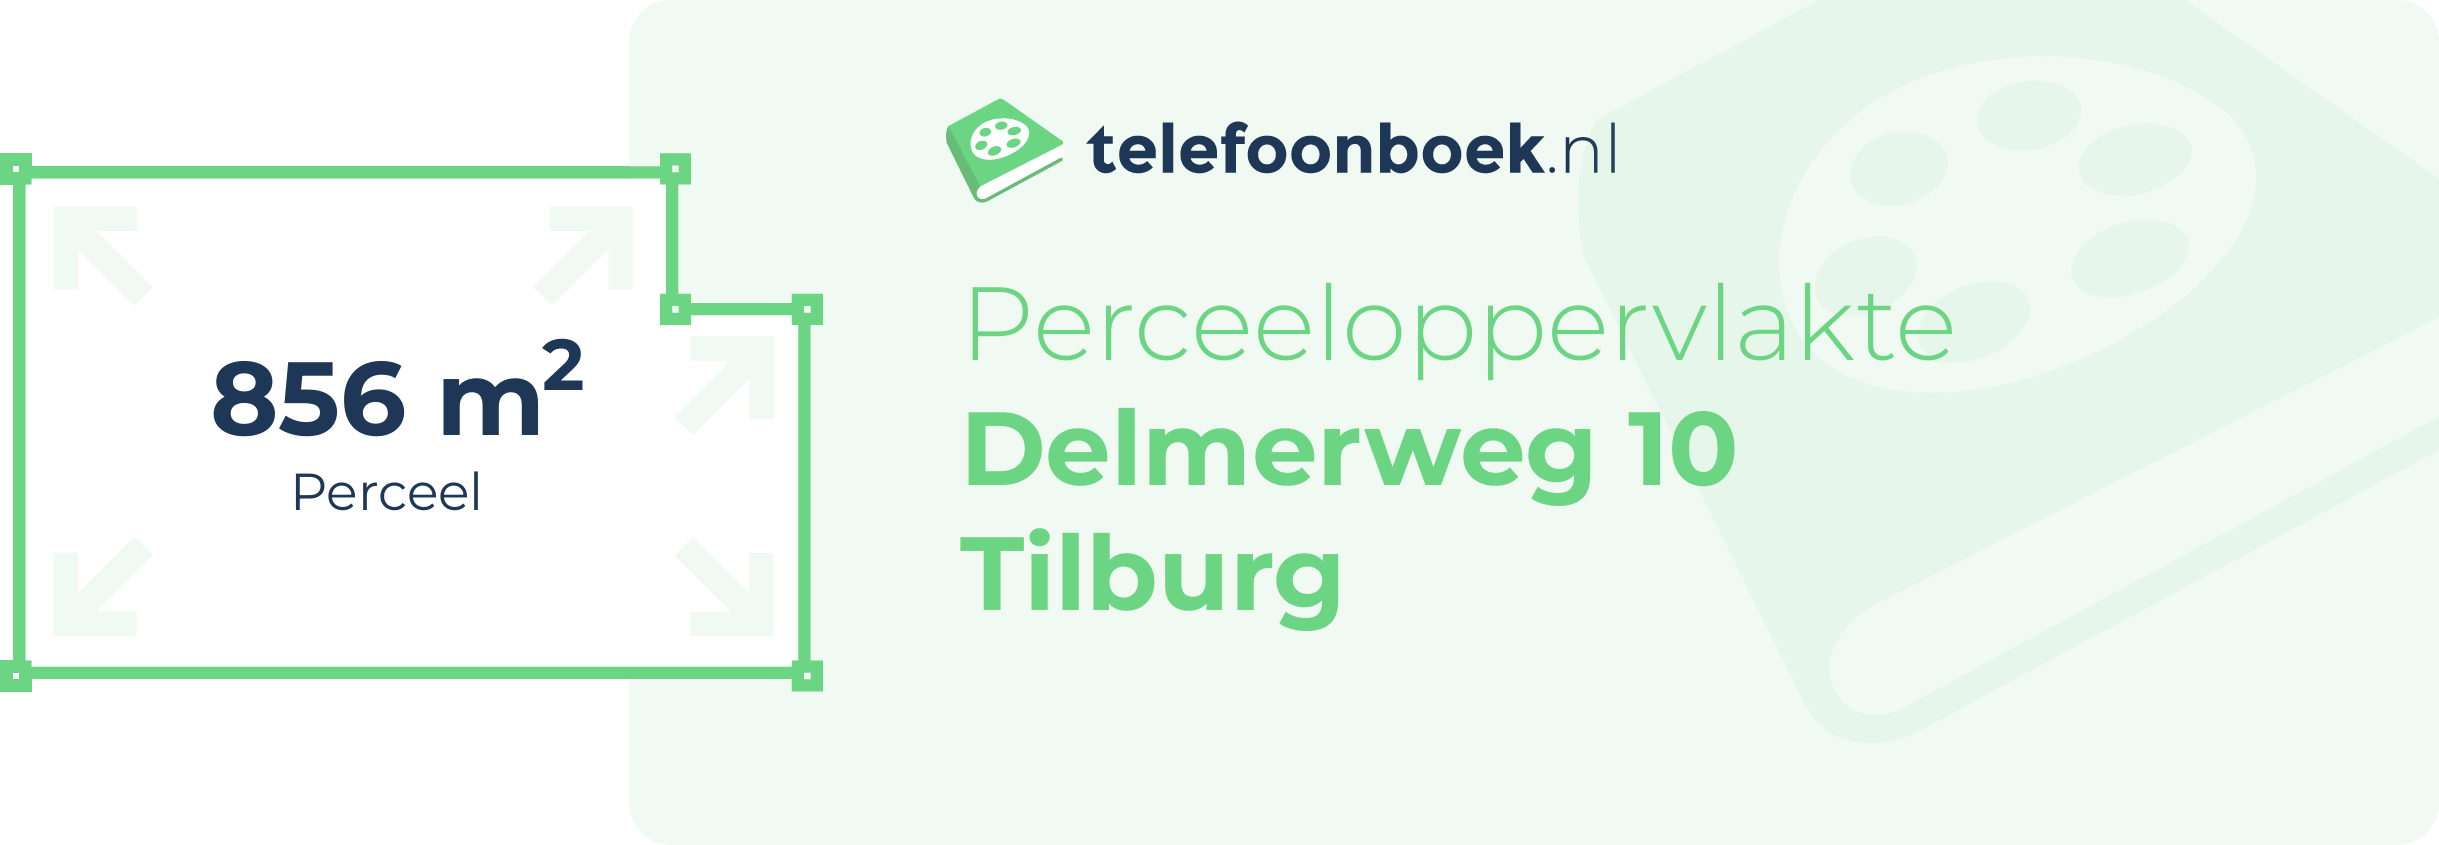 Perceeloppervlakte Delmerweg 10 Tilburg